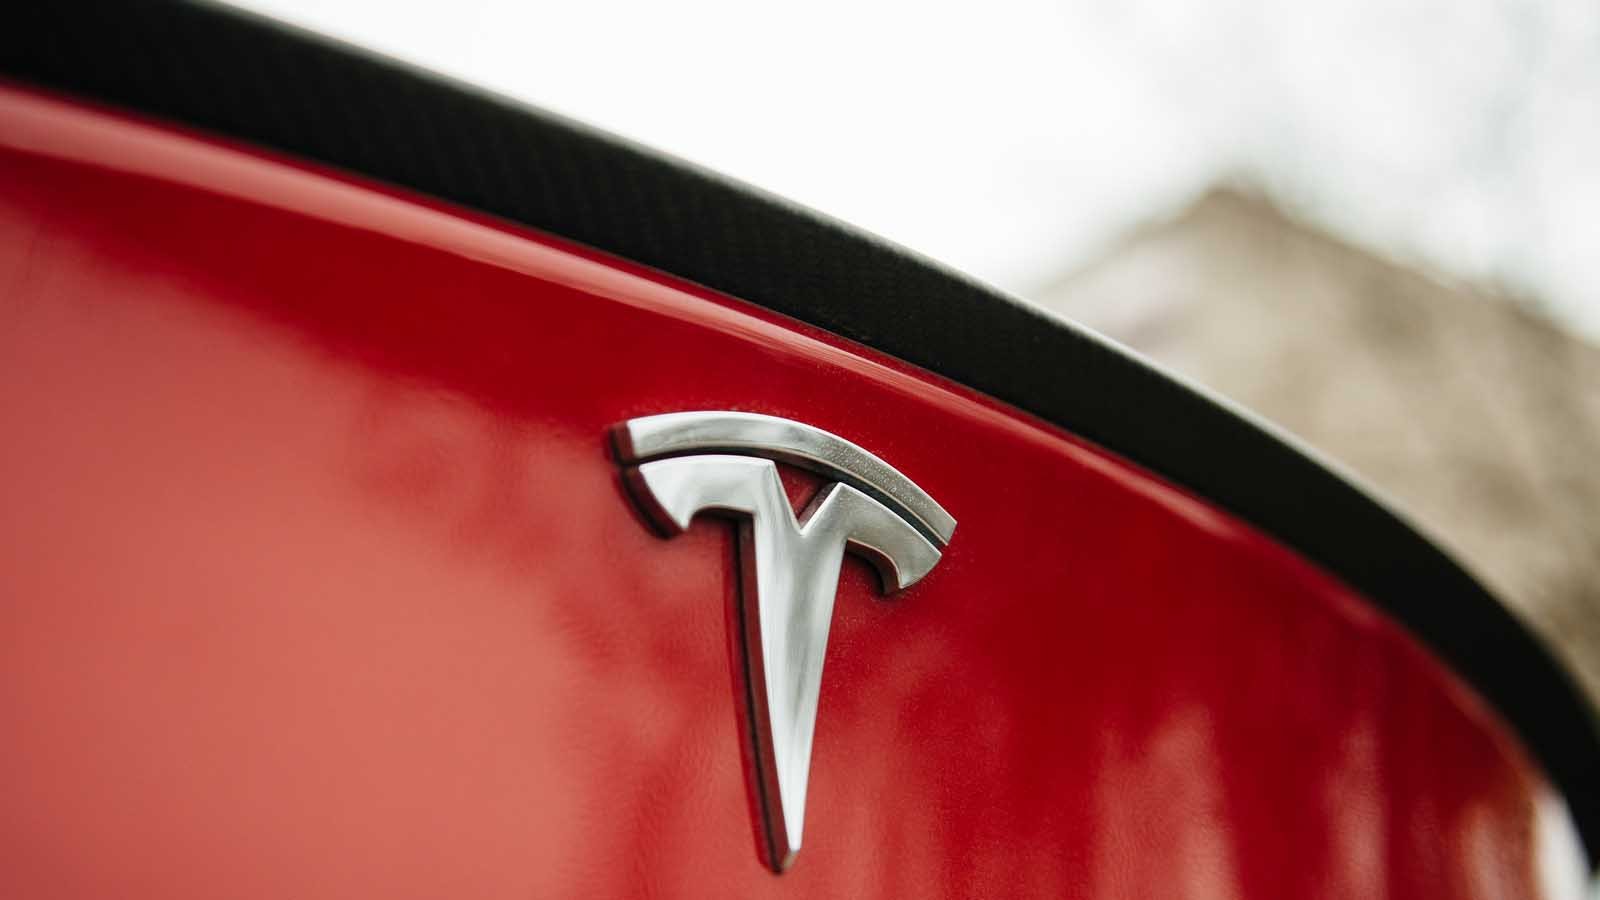 Tesla (TSLA) badge on back end of red Tesla car